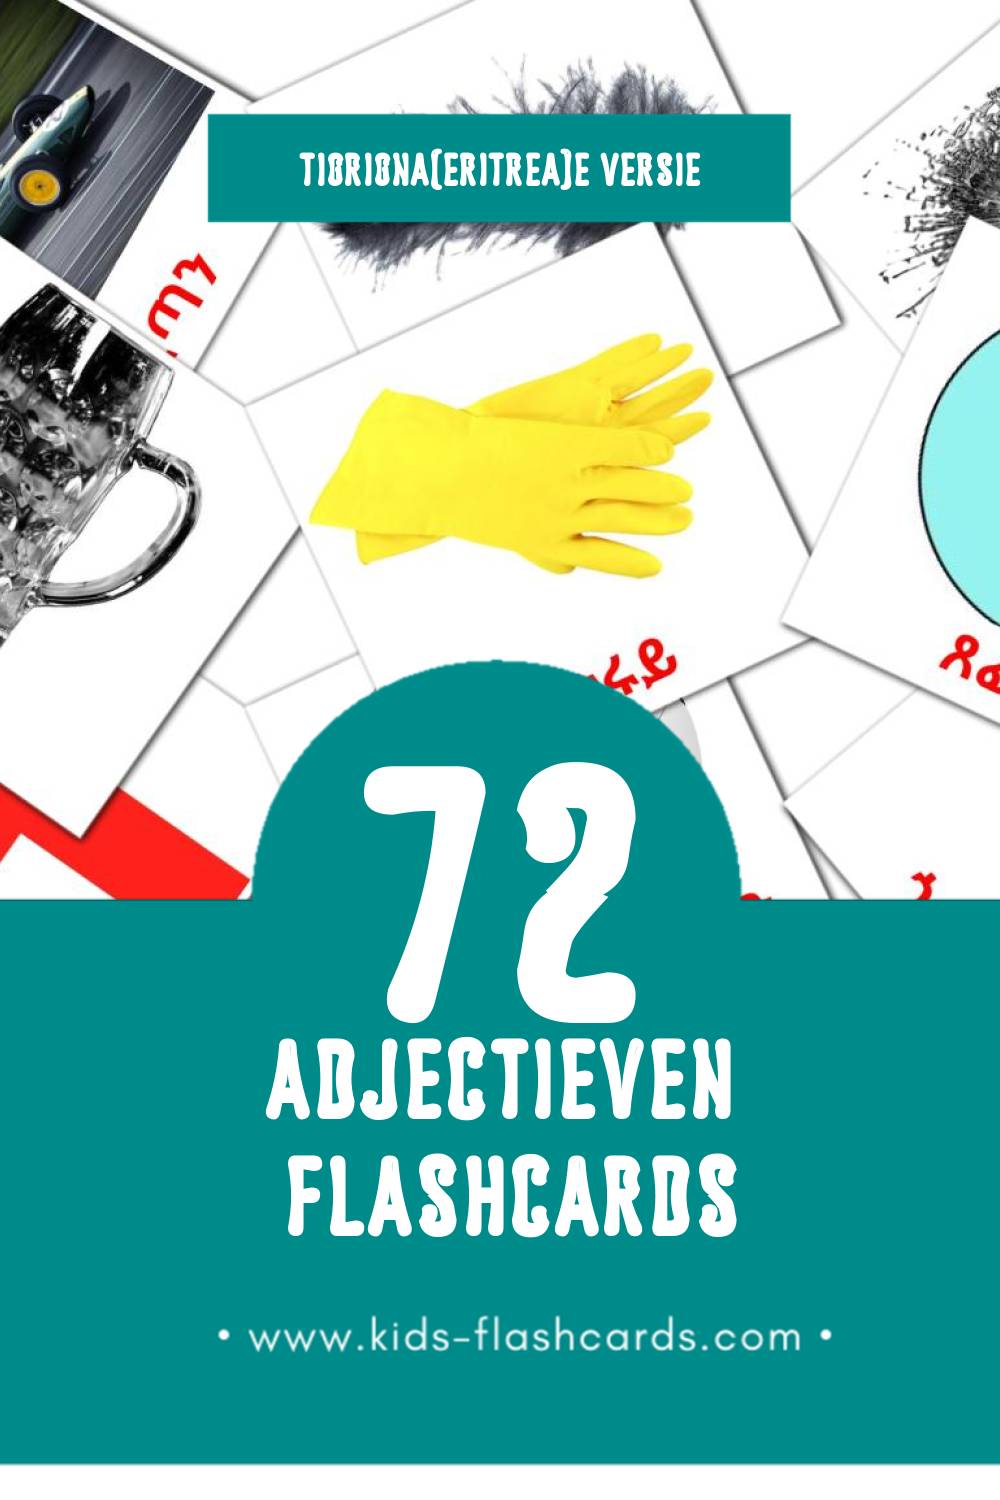 Visuele ቅጽል Flashcards voor Kleuters (72 kaarten in het Tigrigna(eritrea))